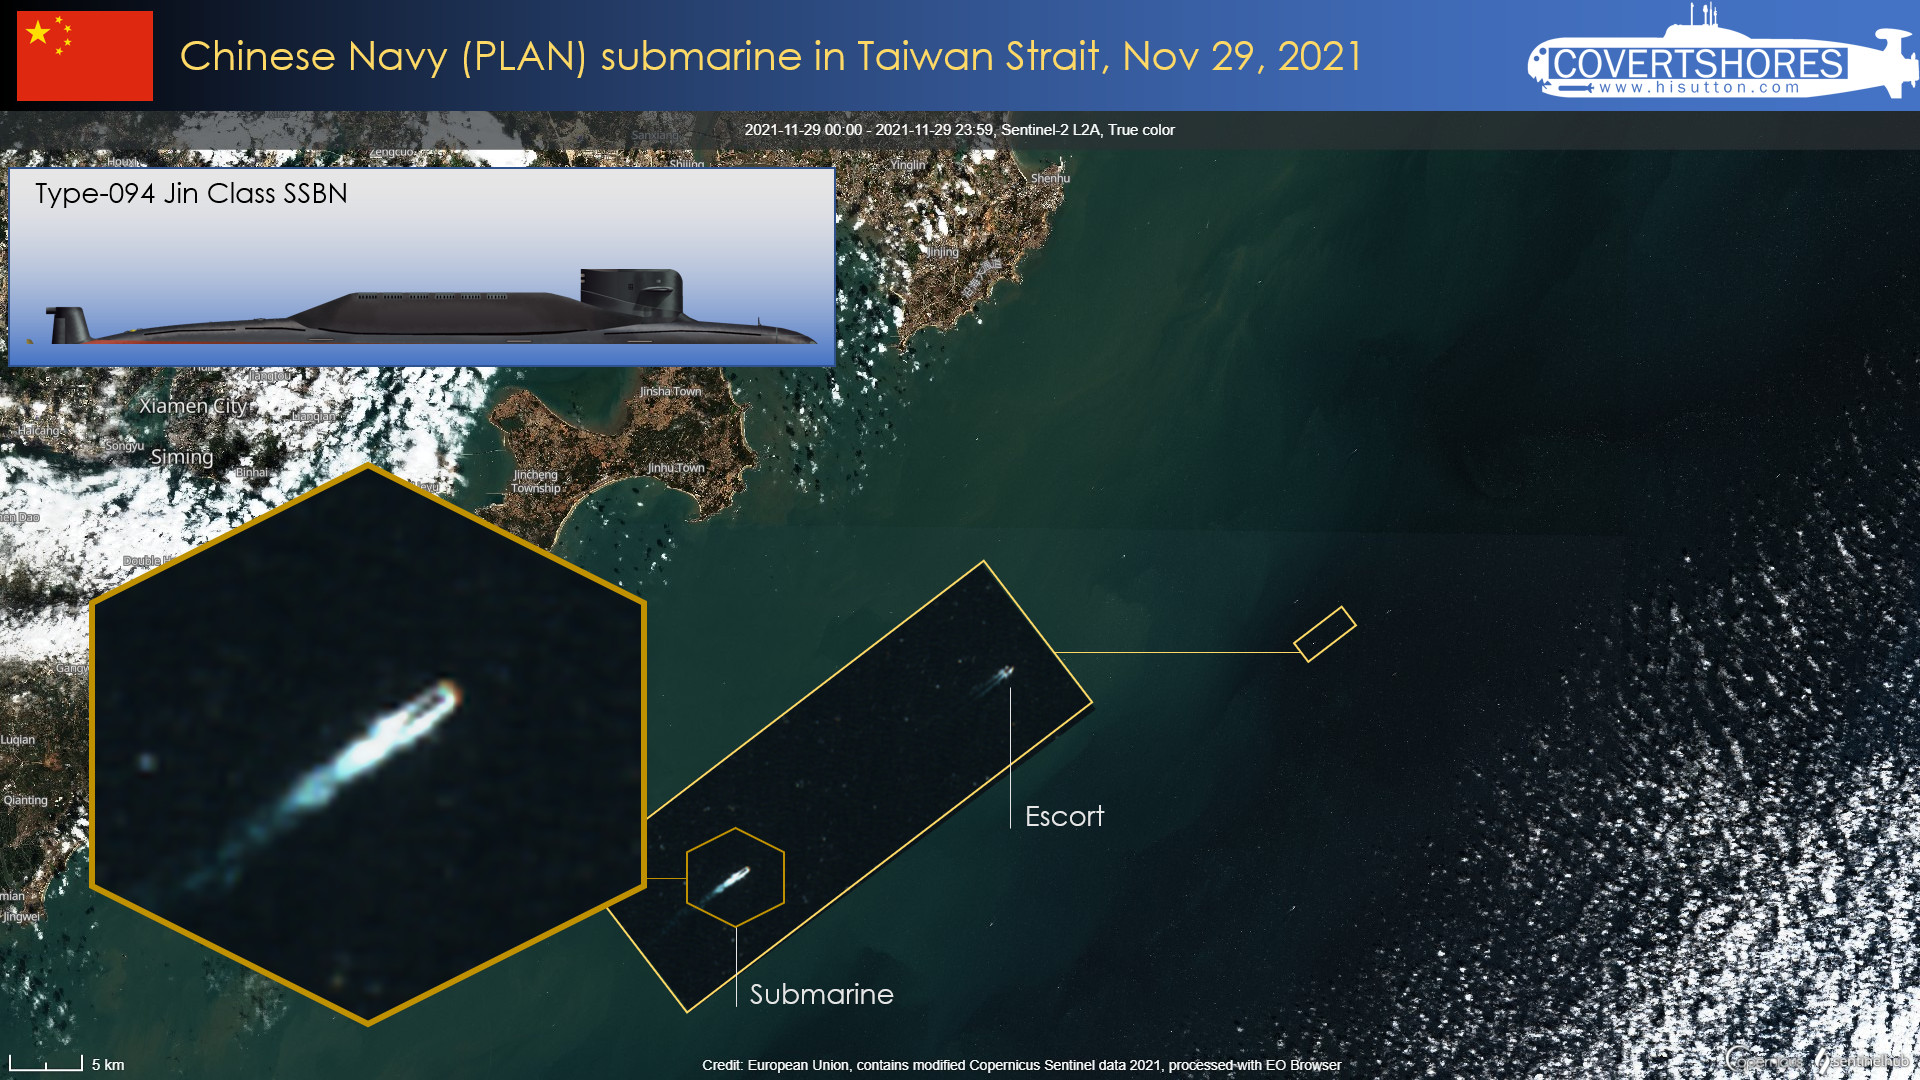 核潛艦,衛星圖像,南海戰略態勢感知,P-8A,台灣海峽,潛艦,嚇阻,戰略型彈道飛彈潛艦,海南島,三亞基地